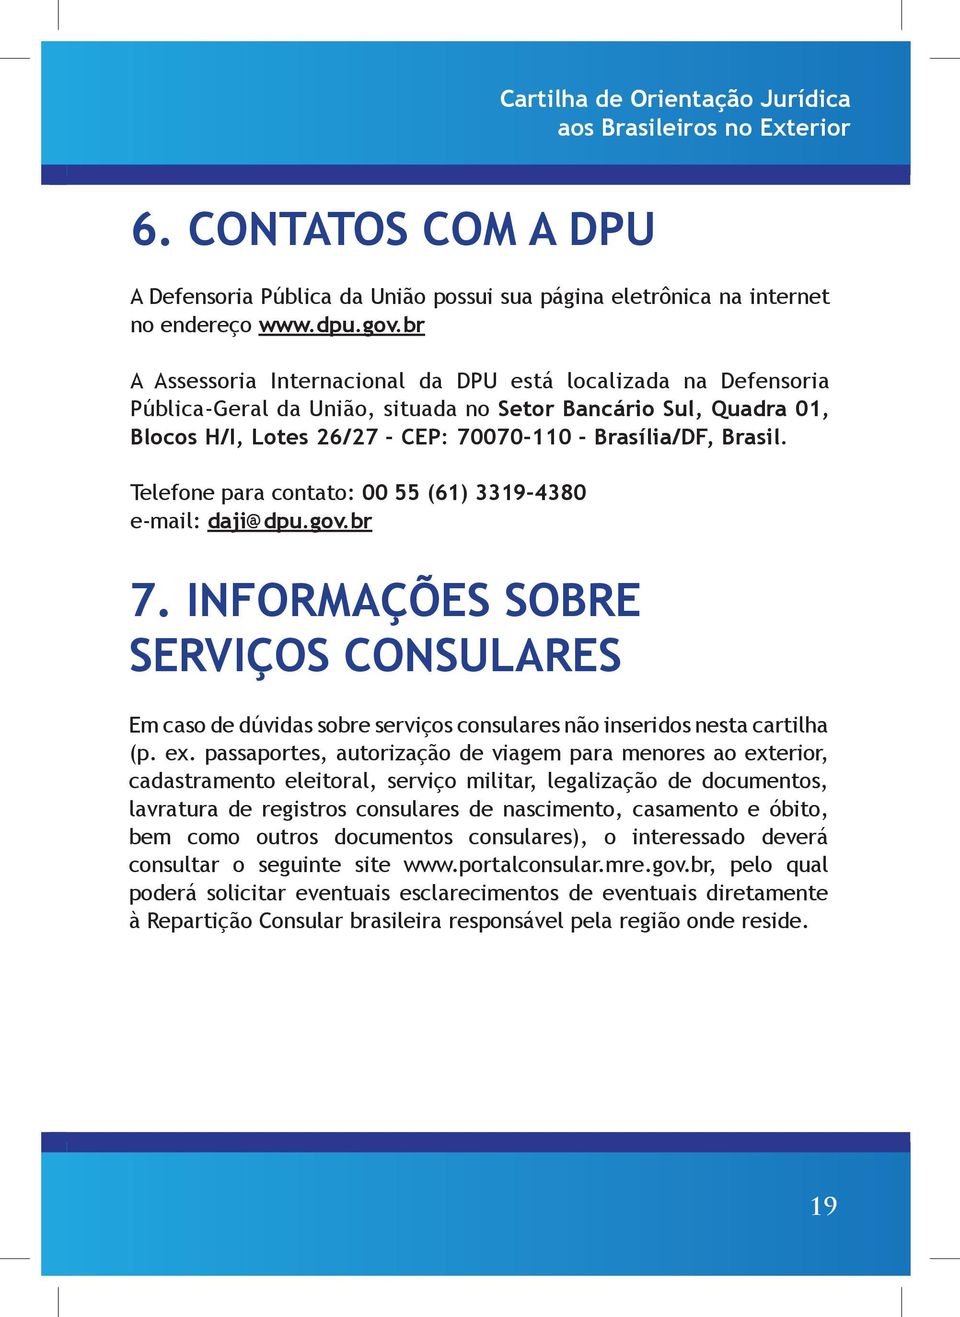 Telefone para contato: 00 55 (61) 3319-4380 e-mail: daji@dpu.gov.br 7. INFORMAÇÕES SOBRE SERVIÇOS CONSULARES Em caso de dúvidas sobre serviços consulares não inseridos nesta cartilha (p. ex.